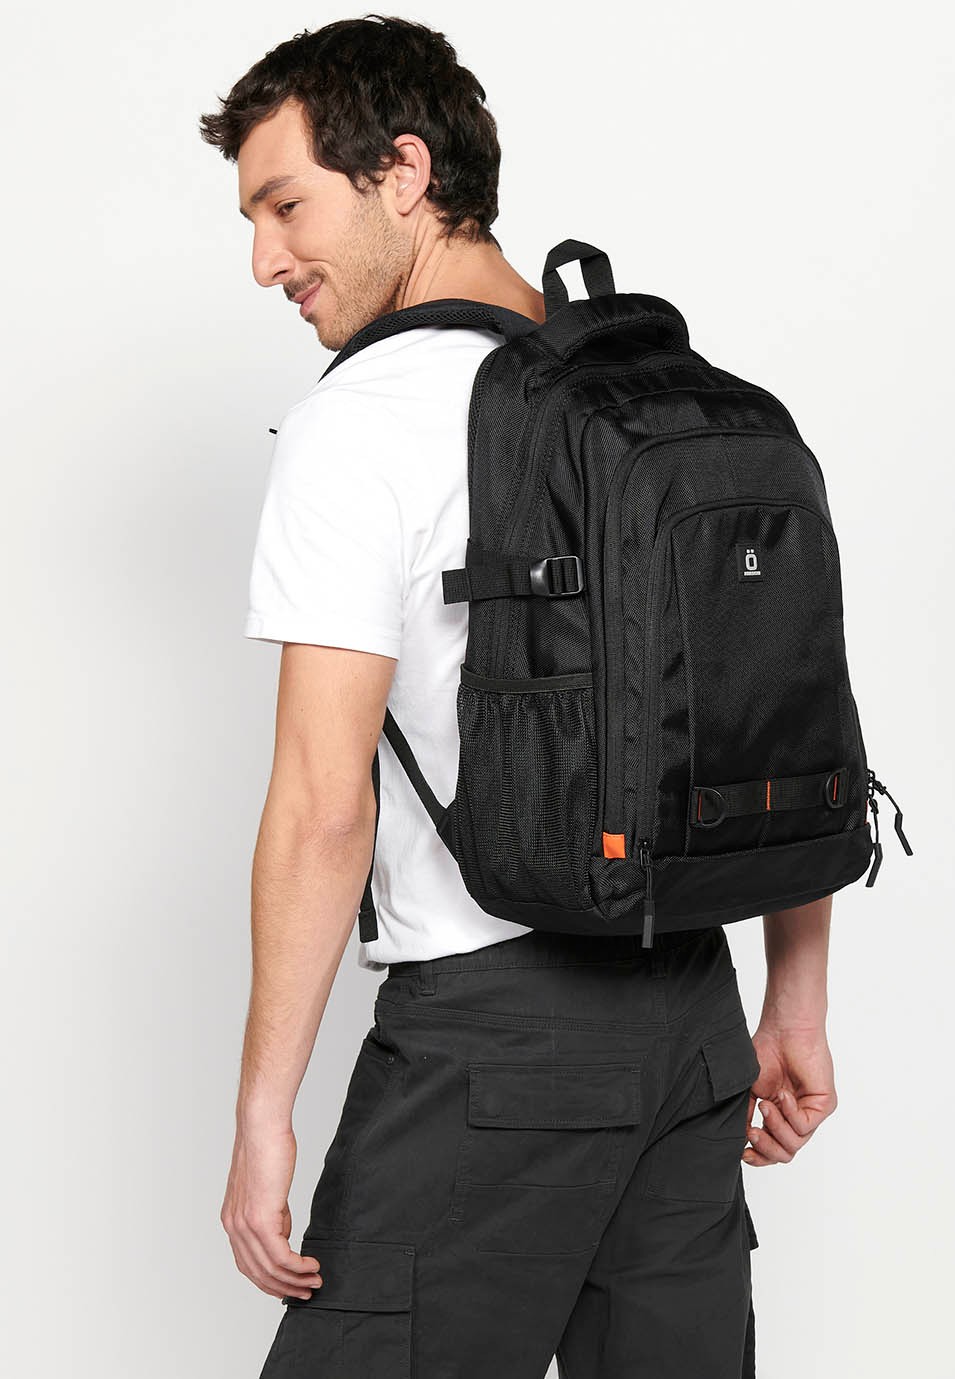 Koröshi-Rucksack mit drei Reißverschlussfächern, eines für einen Laptop, und schwarzen Innentaschen 6